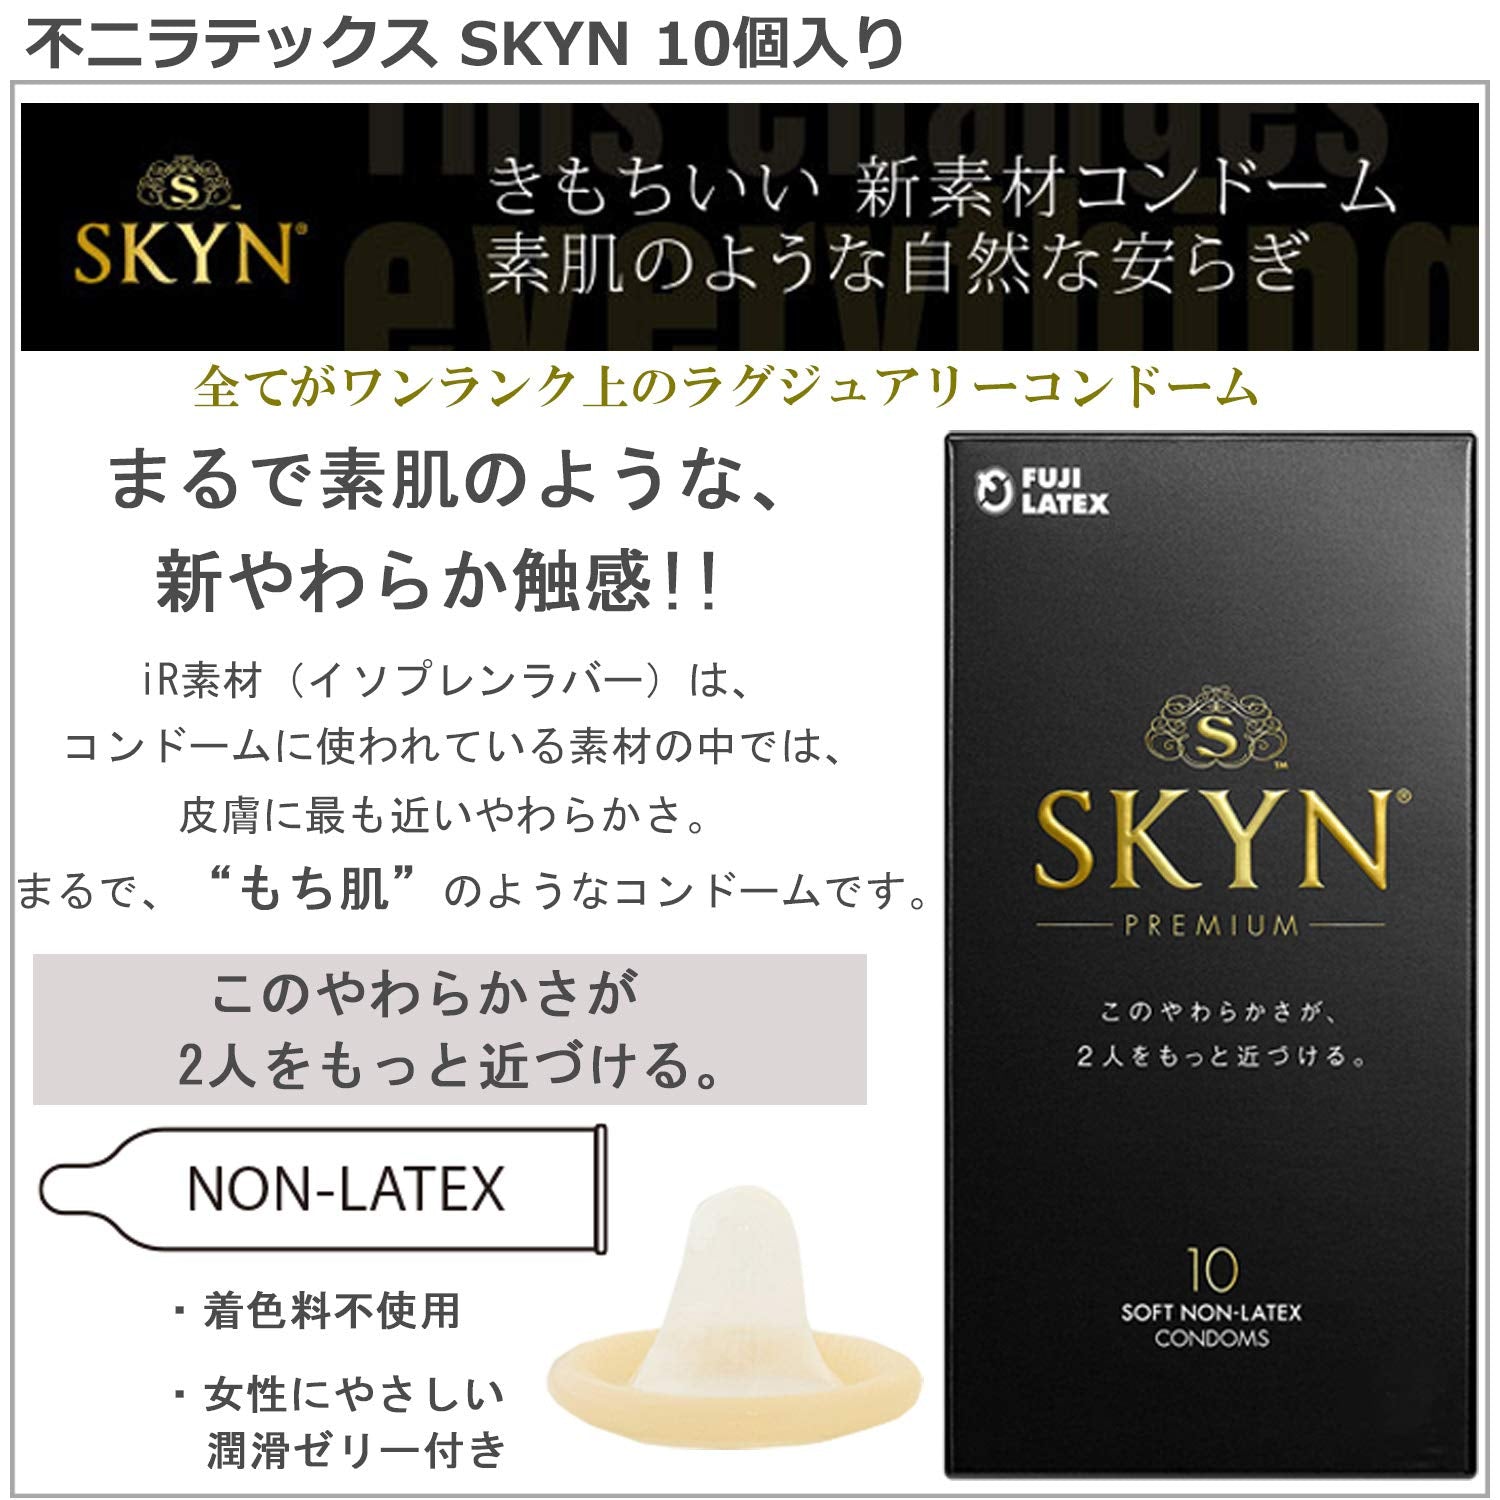 不二ラテックス スキン プレミアム（5コ入） iR素材 skyn condom コンドーム 避妊具 スティックローション1本付き SKYN 2箱セット - BanzaiHobby